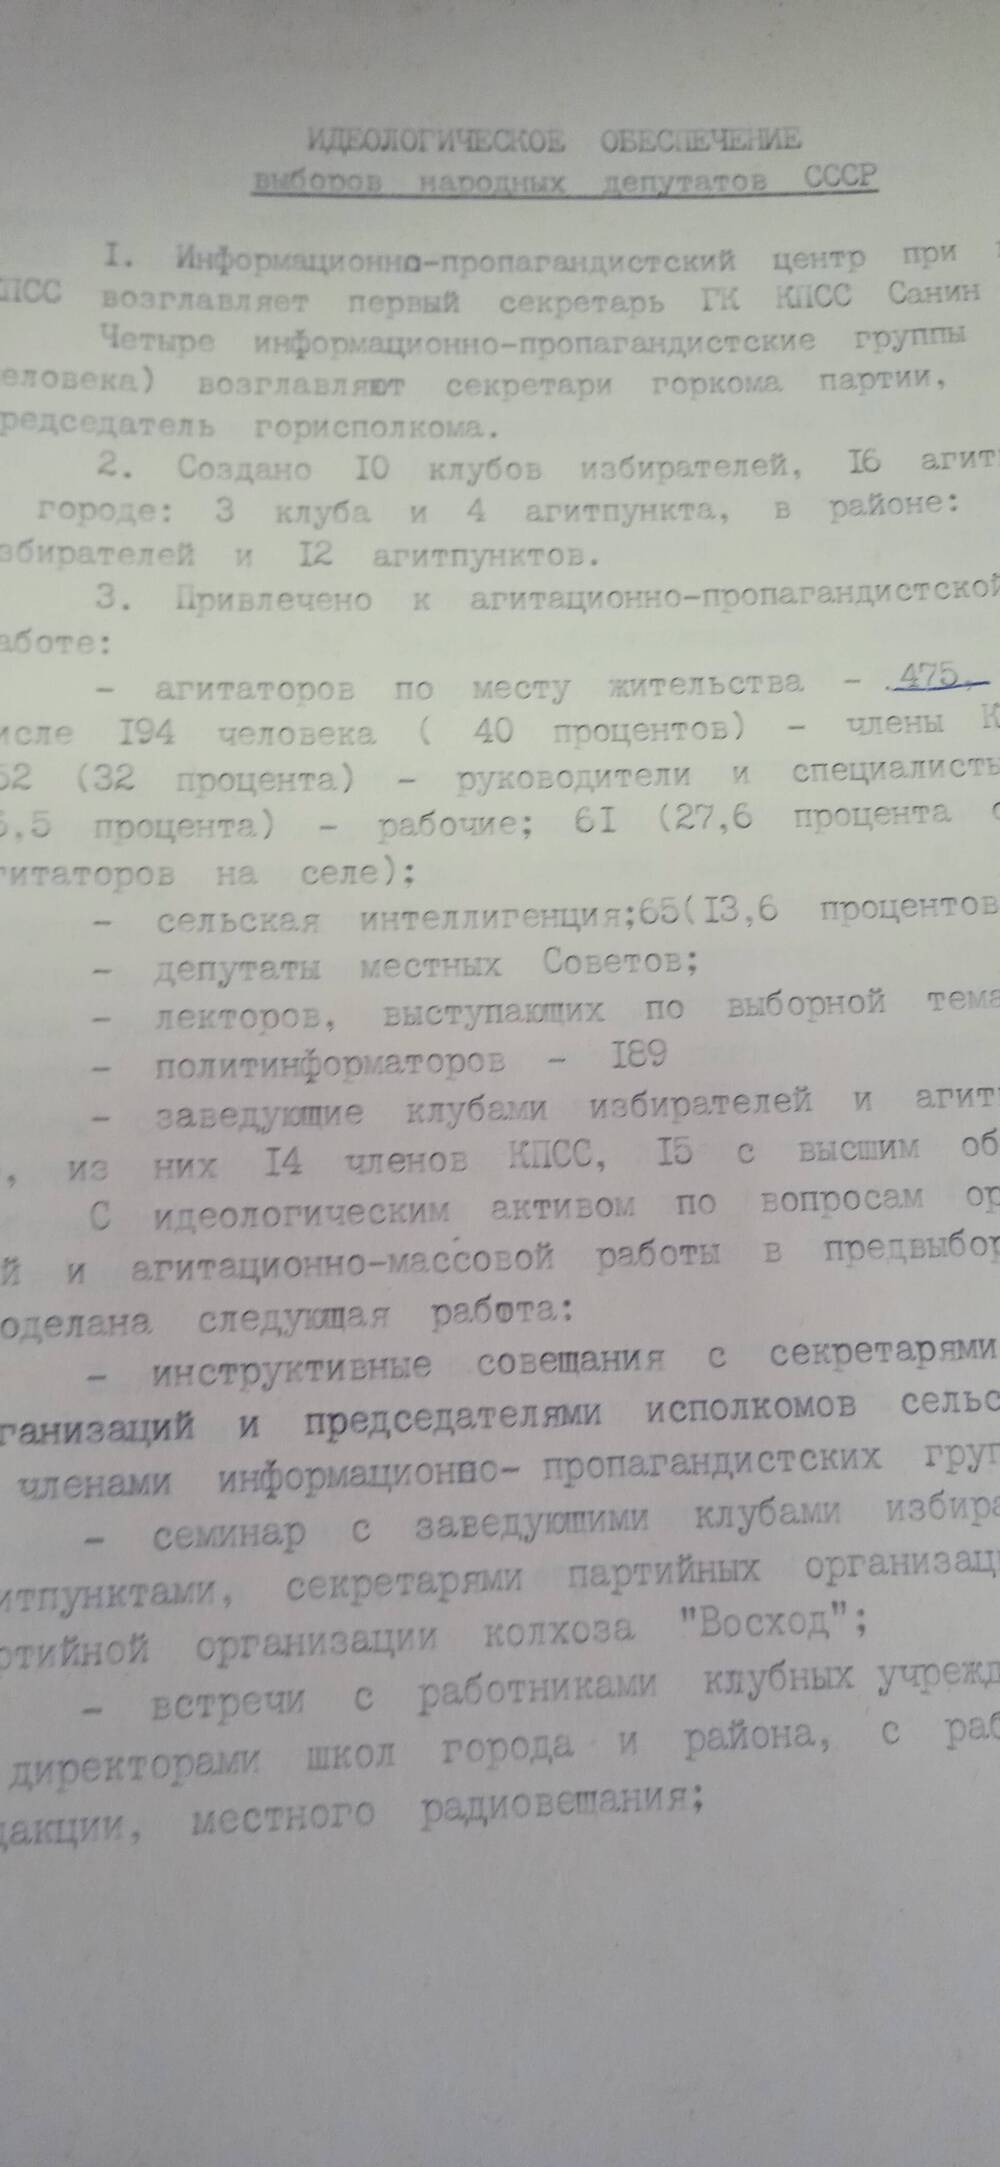 Идеологическое обеспечение выборов народных депутатов СССР.